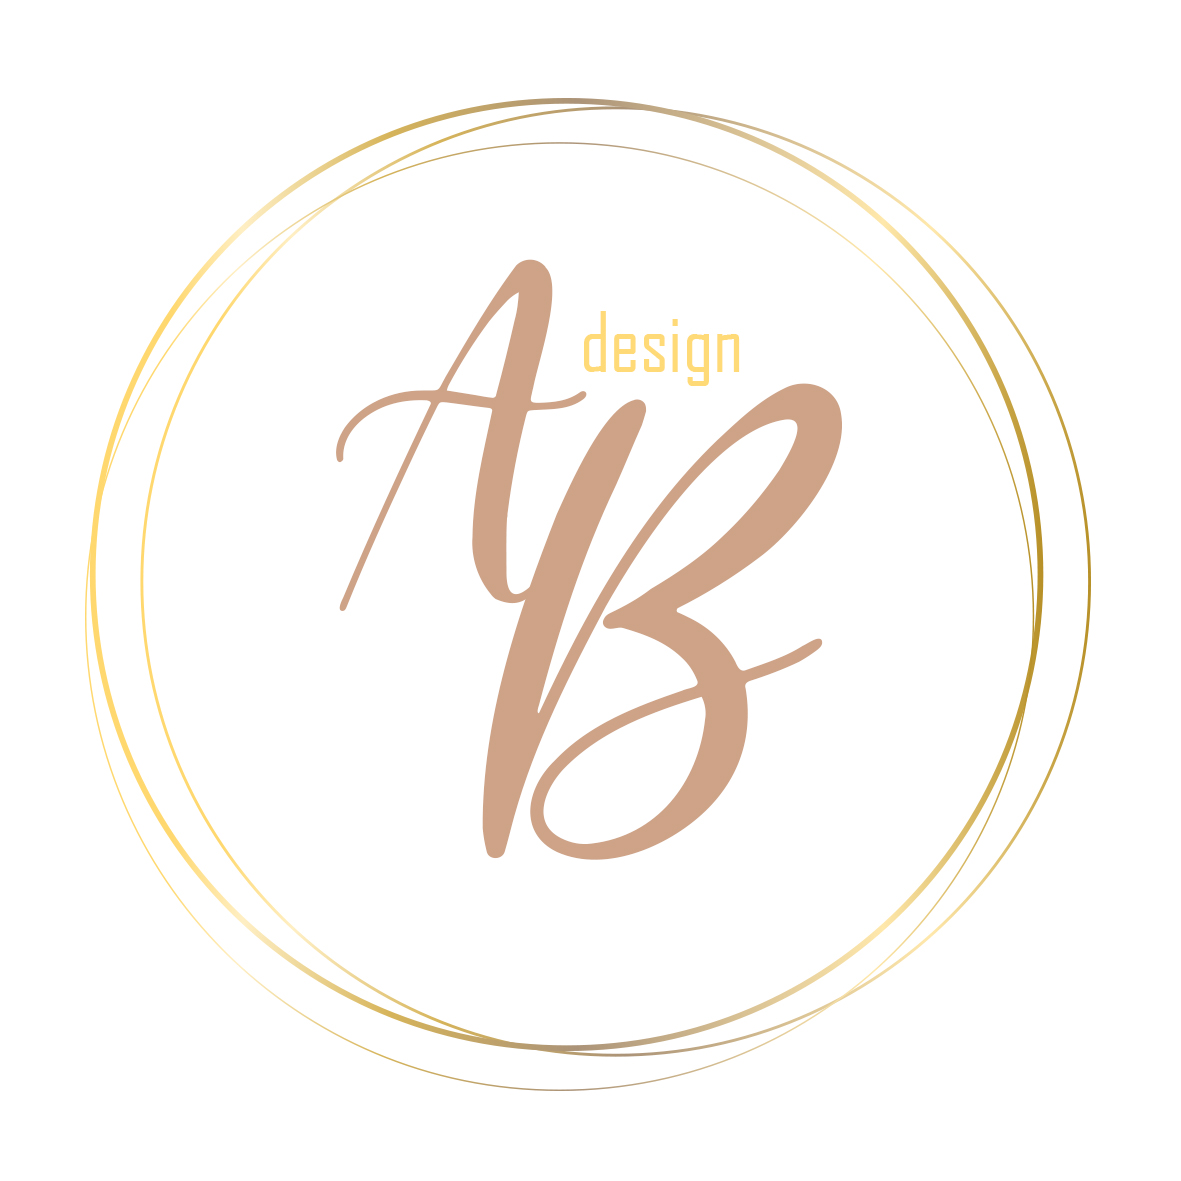 AB design